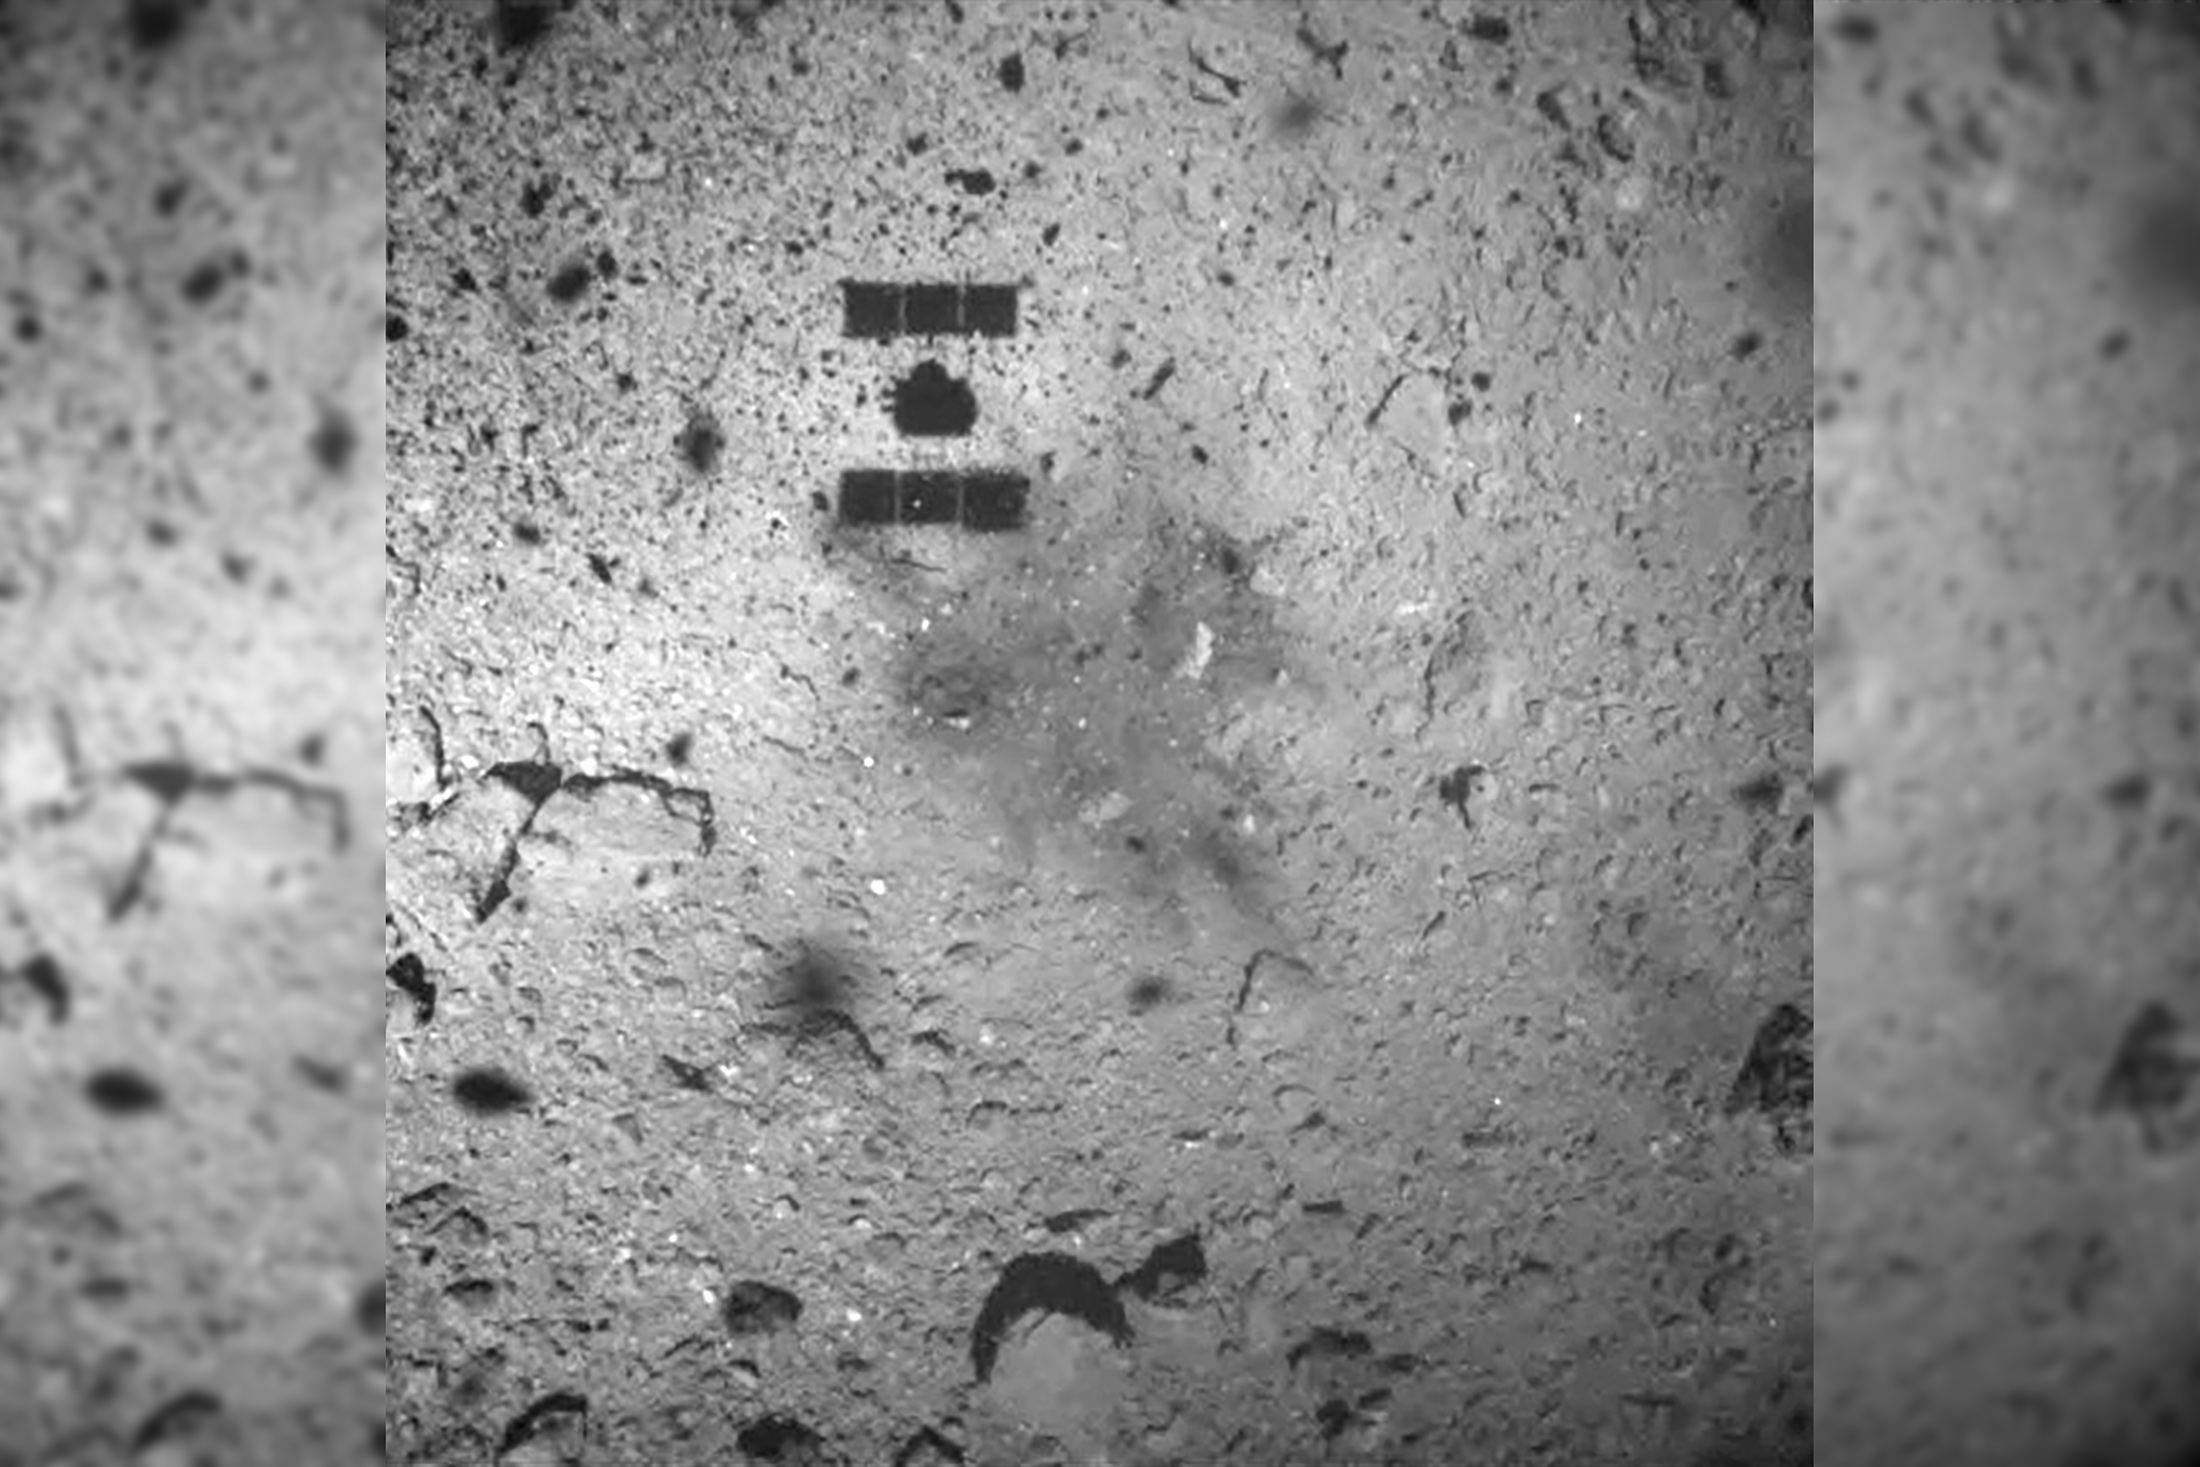 La sonde Hayabusa-2 lors de sa descente pour réaliser un « touch-down » et récupérer des échantillons de l'astéroïde Ryugu. © Jaxa, Hayabusa-2 Science Team